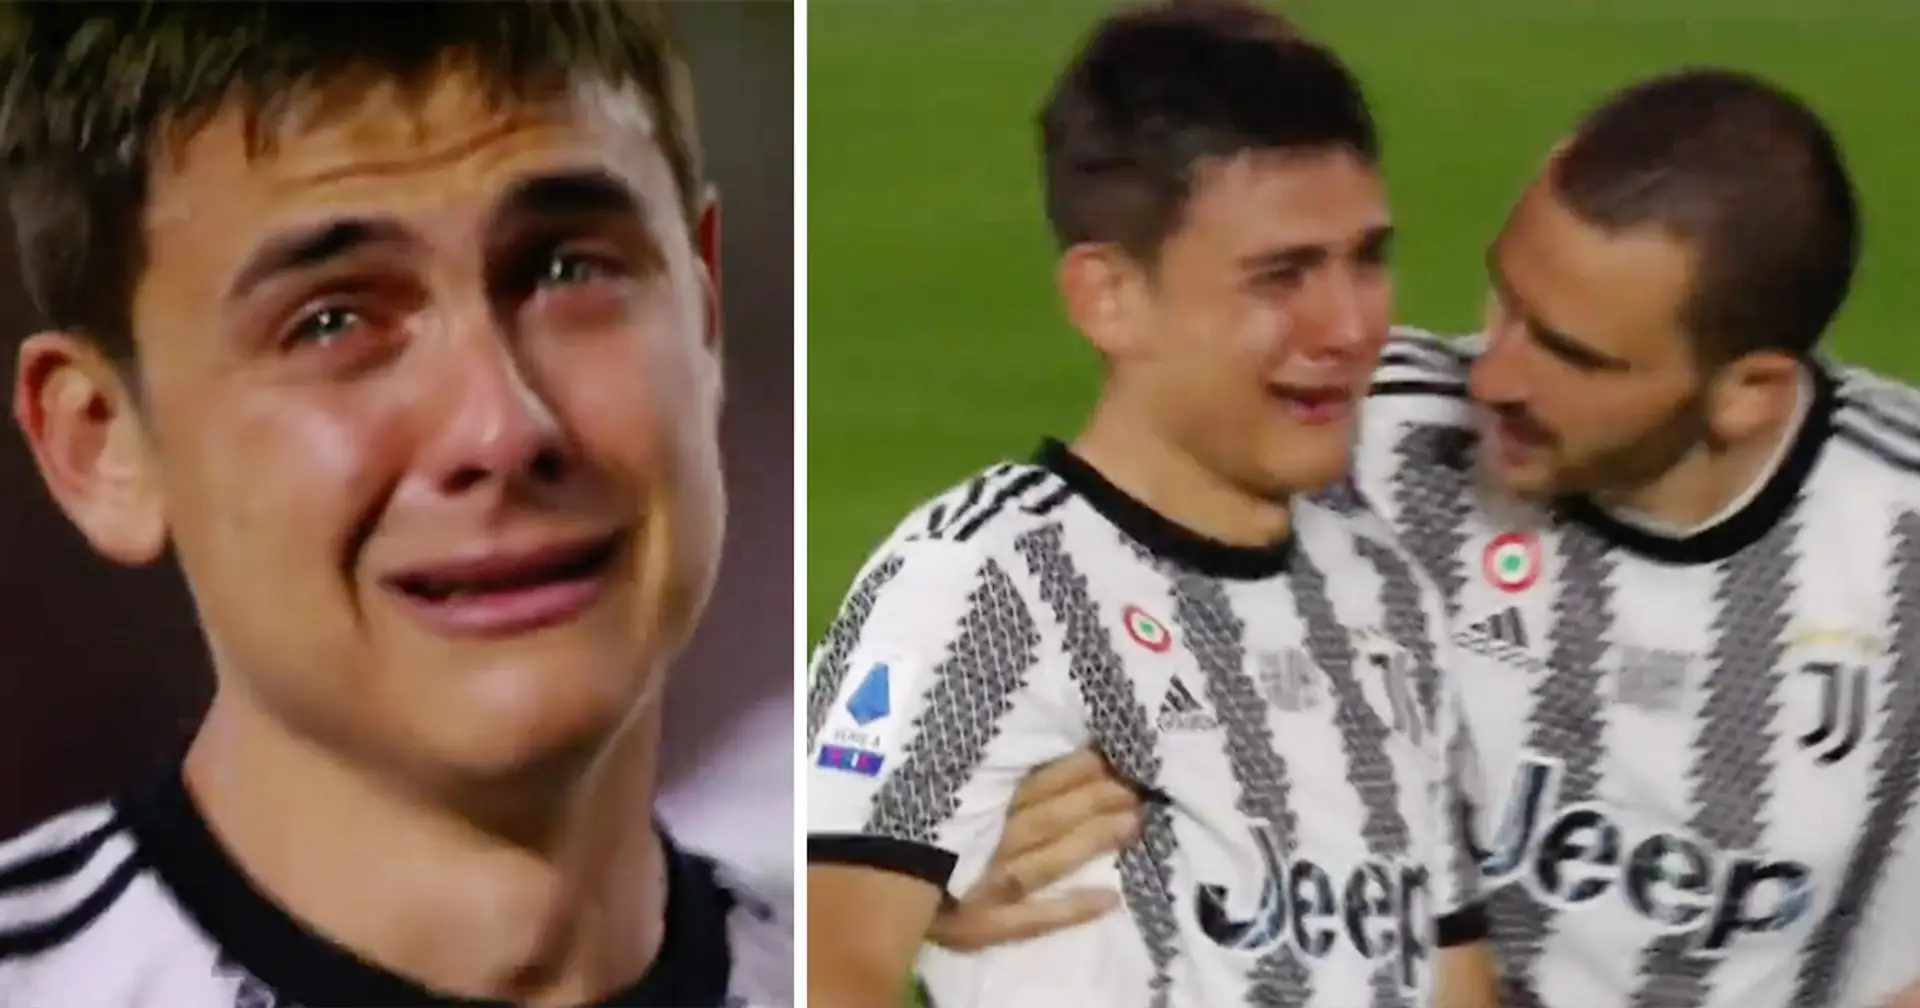 Paulo Dybala fond en larmes après avoir disputé son dernier match avec la Juventus